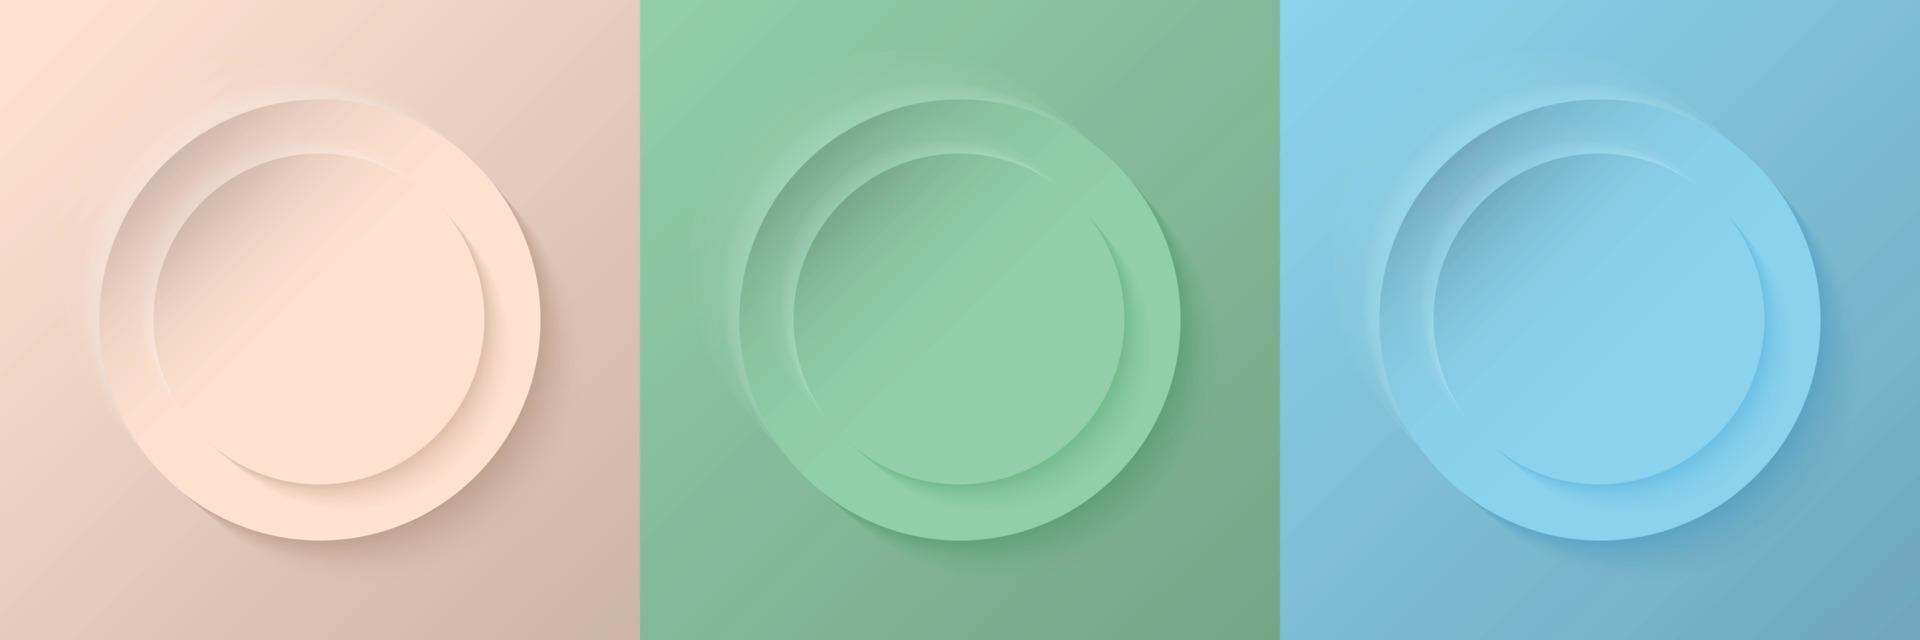 conjunto de design de quadro abstrato 3d bege, verde claro e azul claro de círculo de cores pastel para produto cosmético. coleção de fundo geométrico de cor na moda com espaço de cópia. vetor eps10